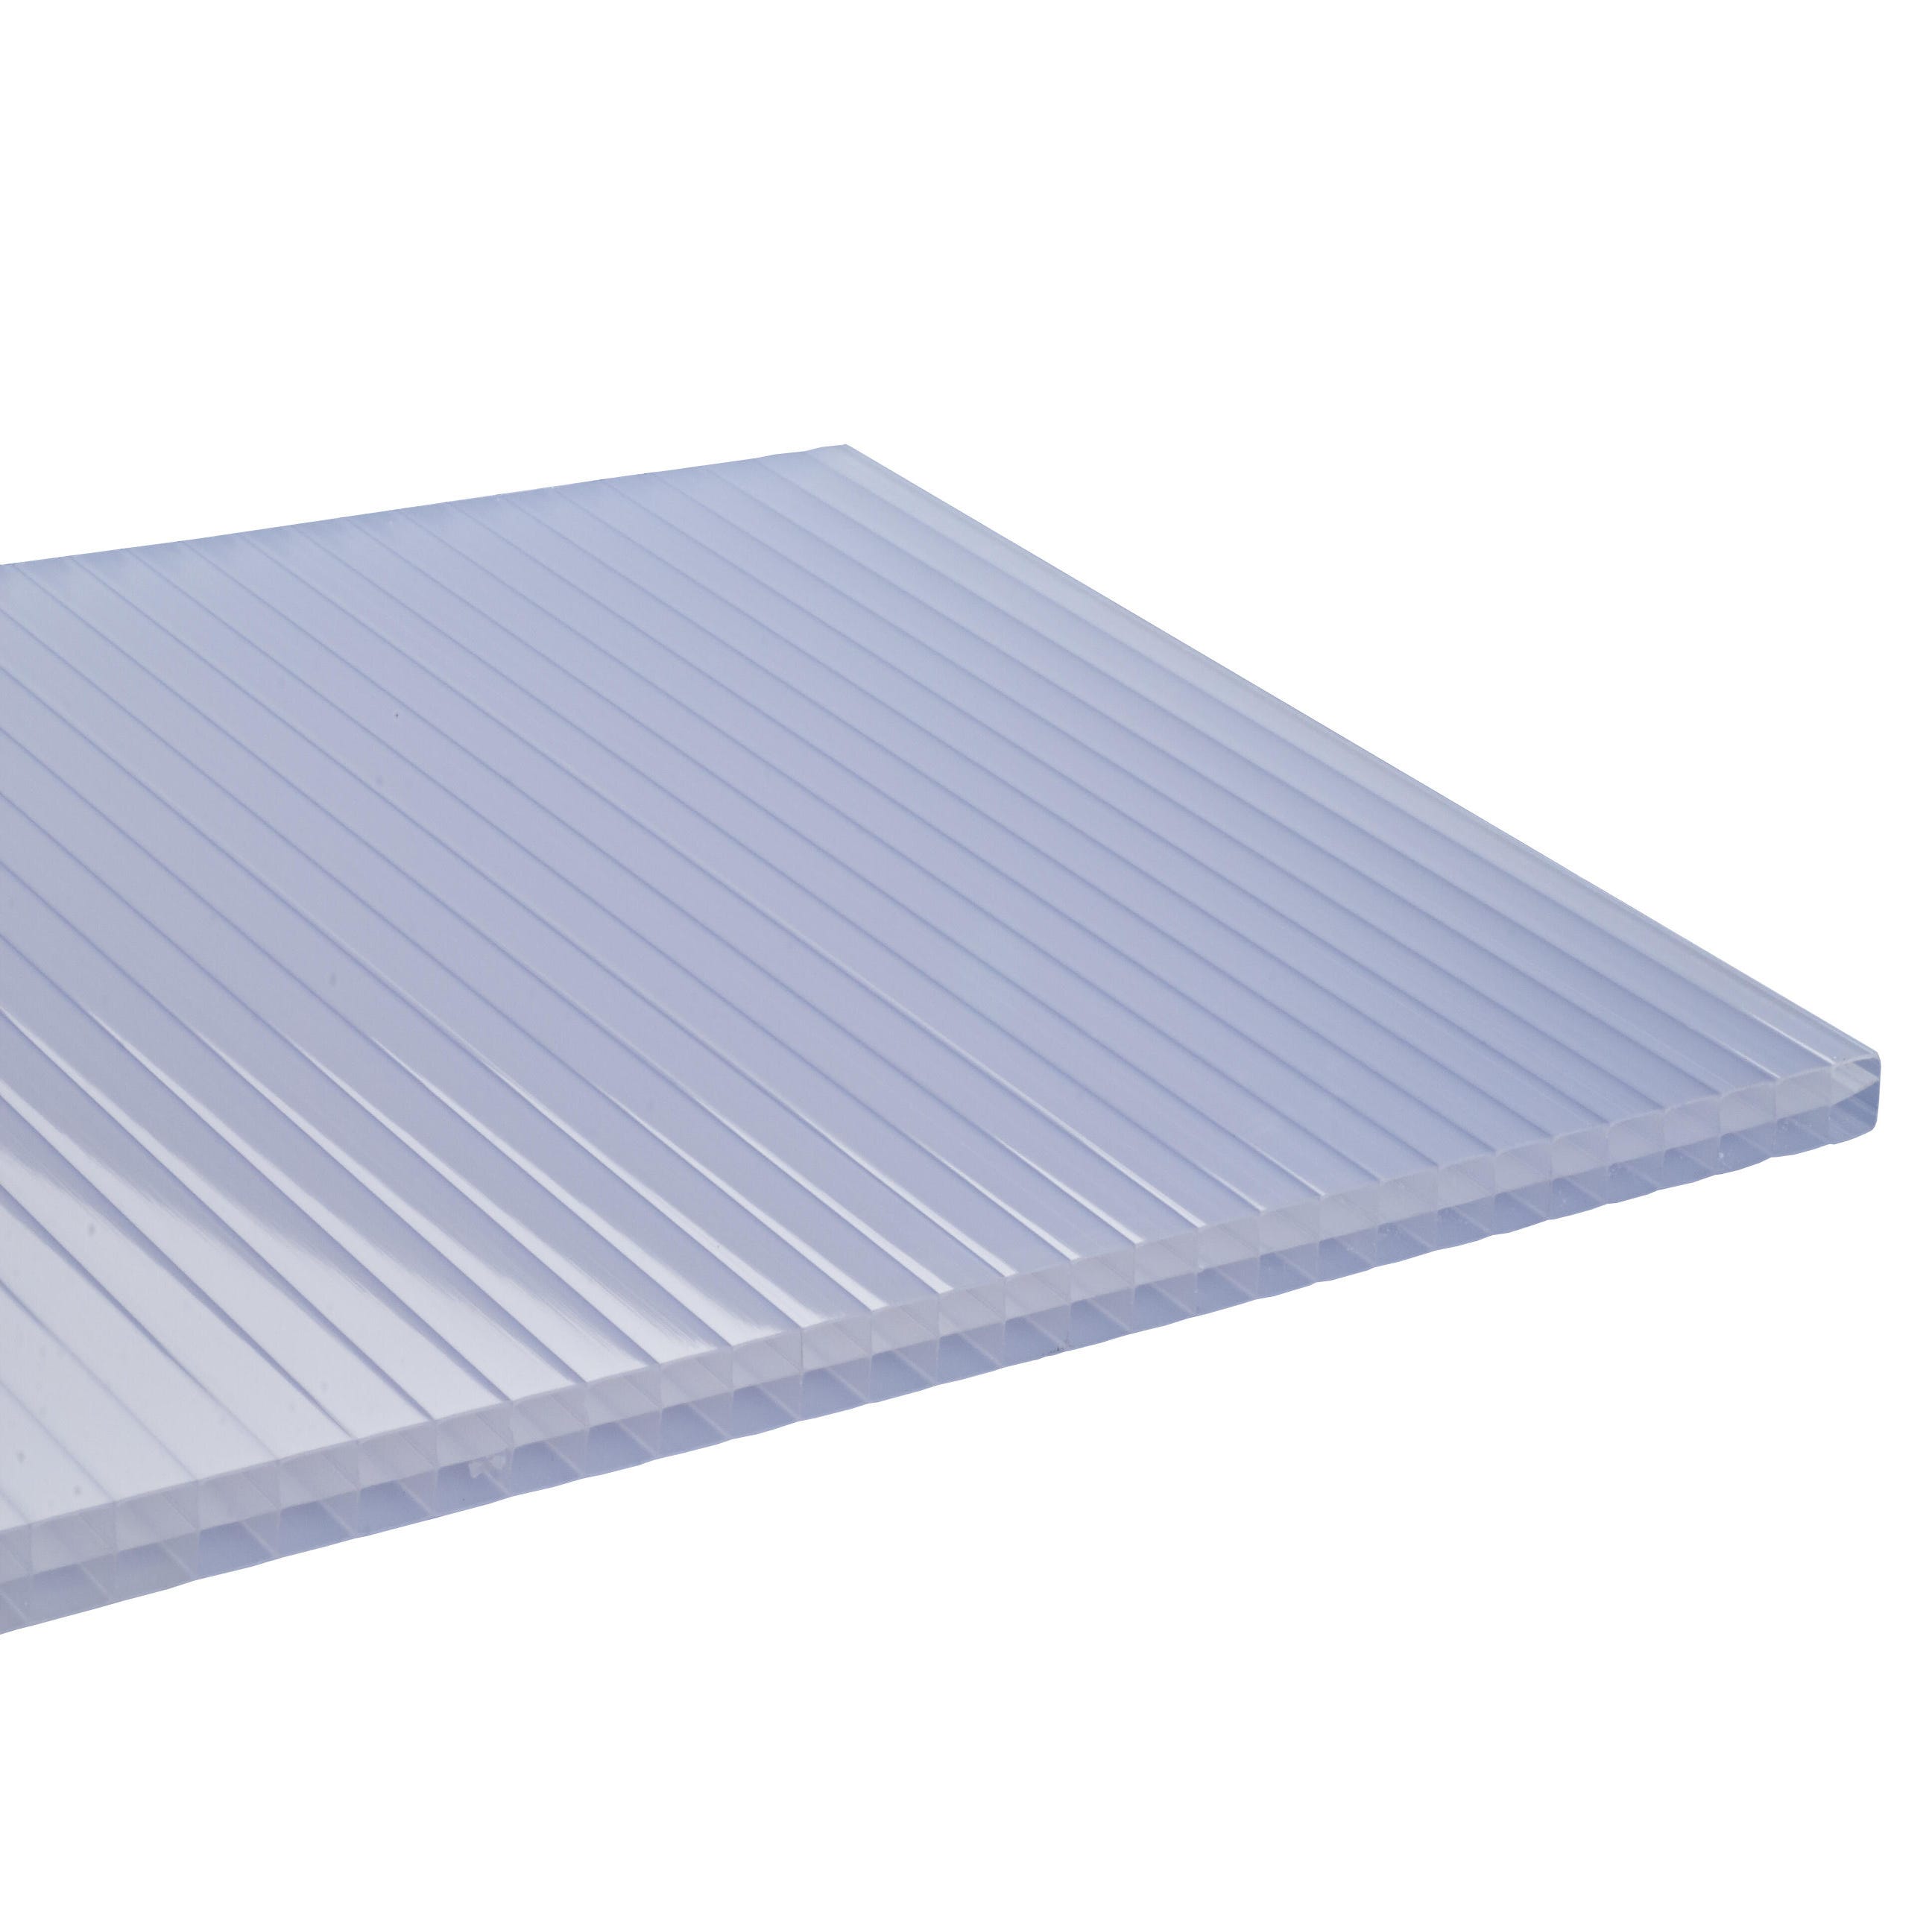 Placa de policarbonato celular (2 m x 0,98 m x 10 mm